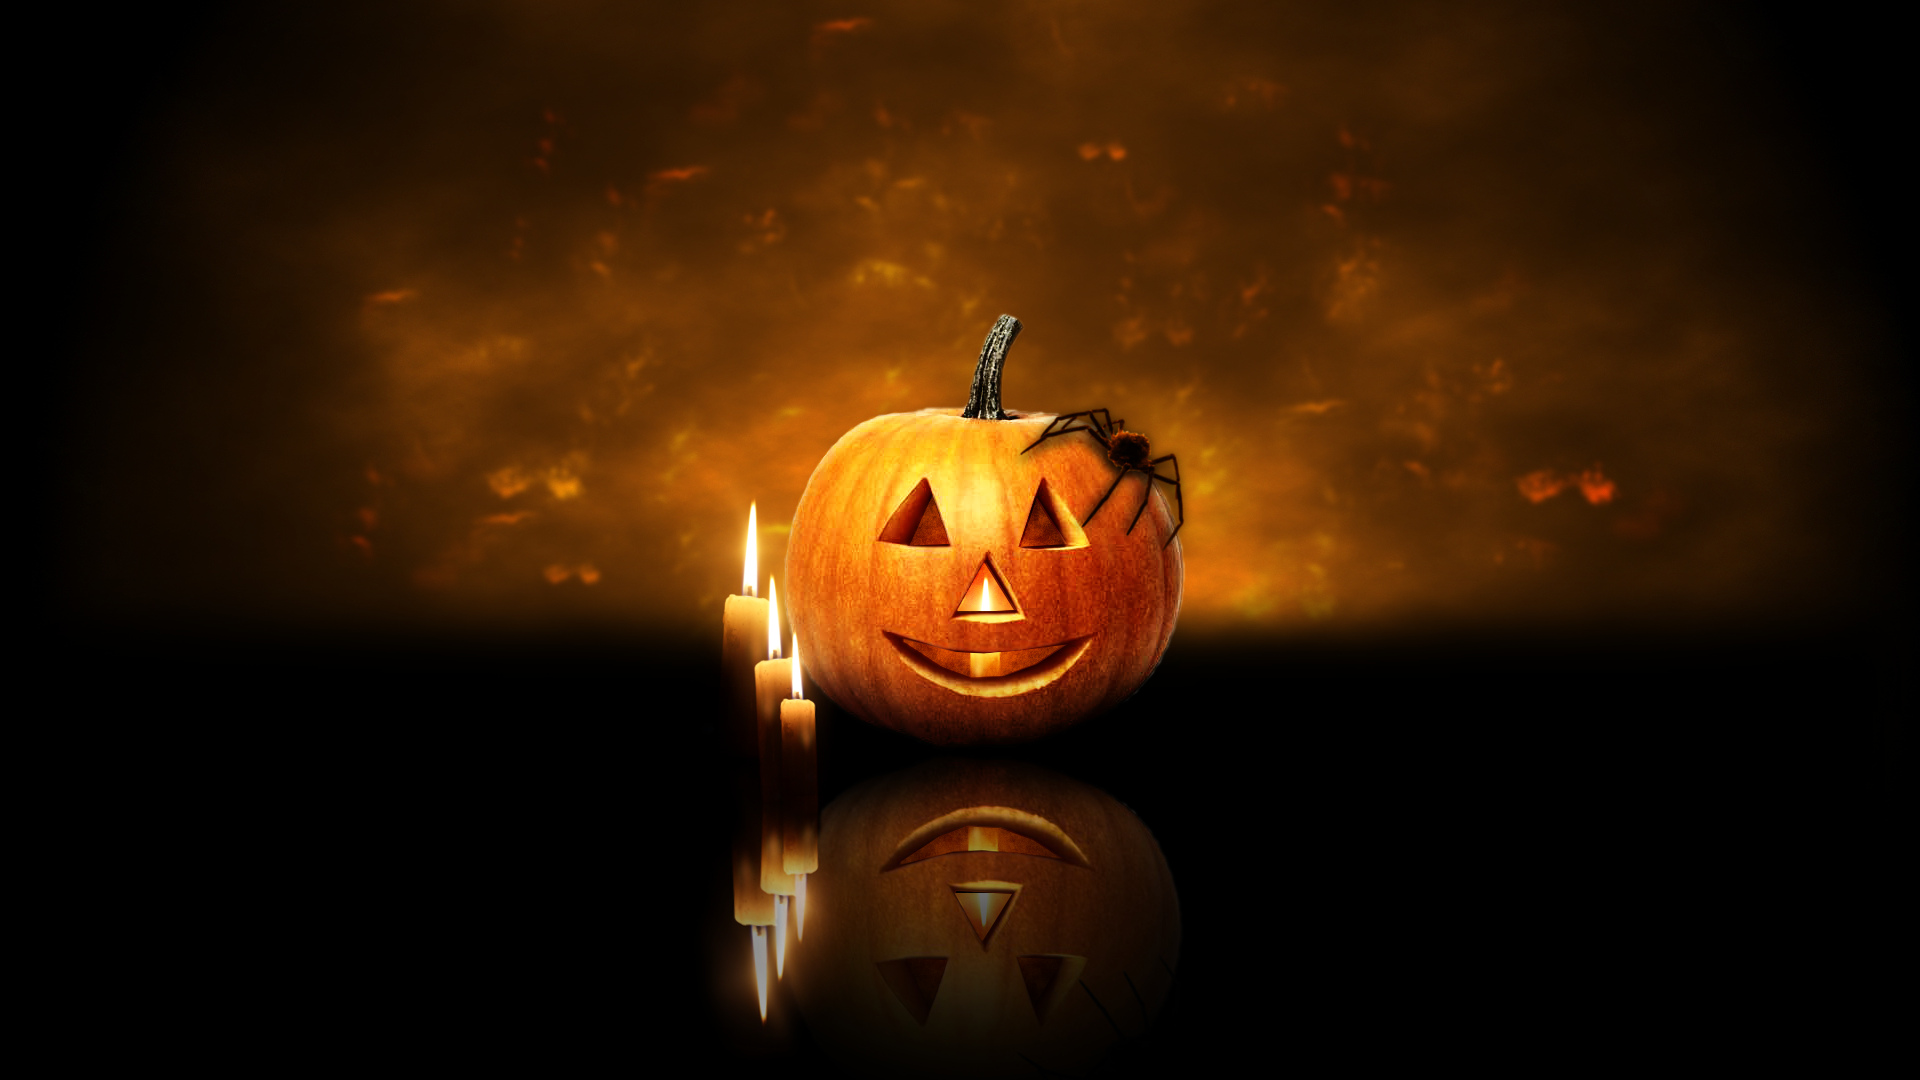 Halloween Pumpkin Wallpaper Image Amp Pictures Becuo